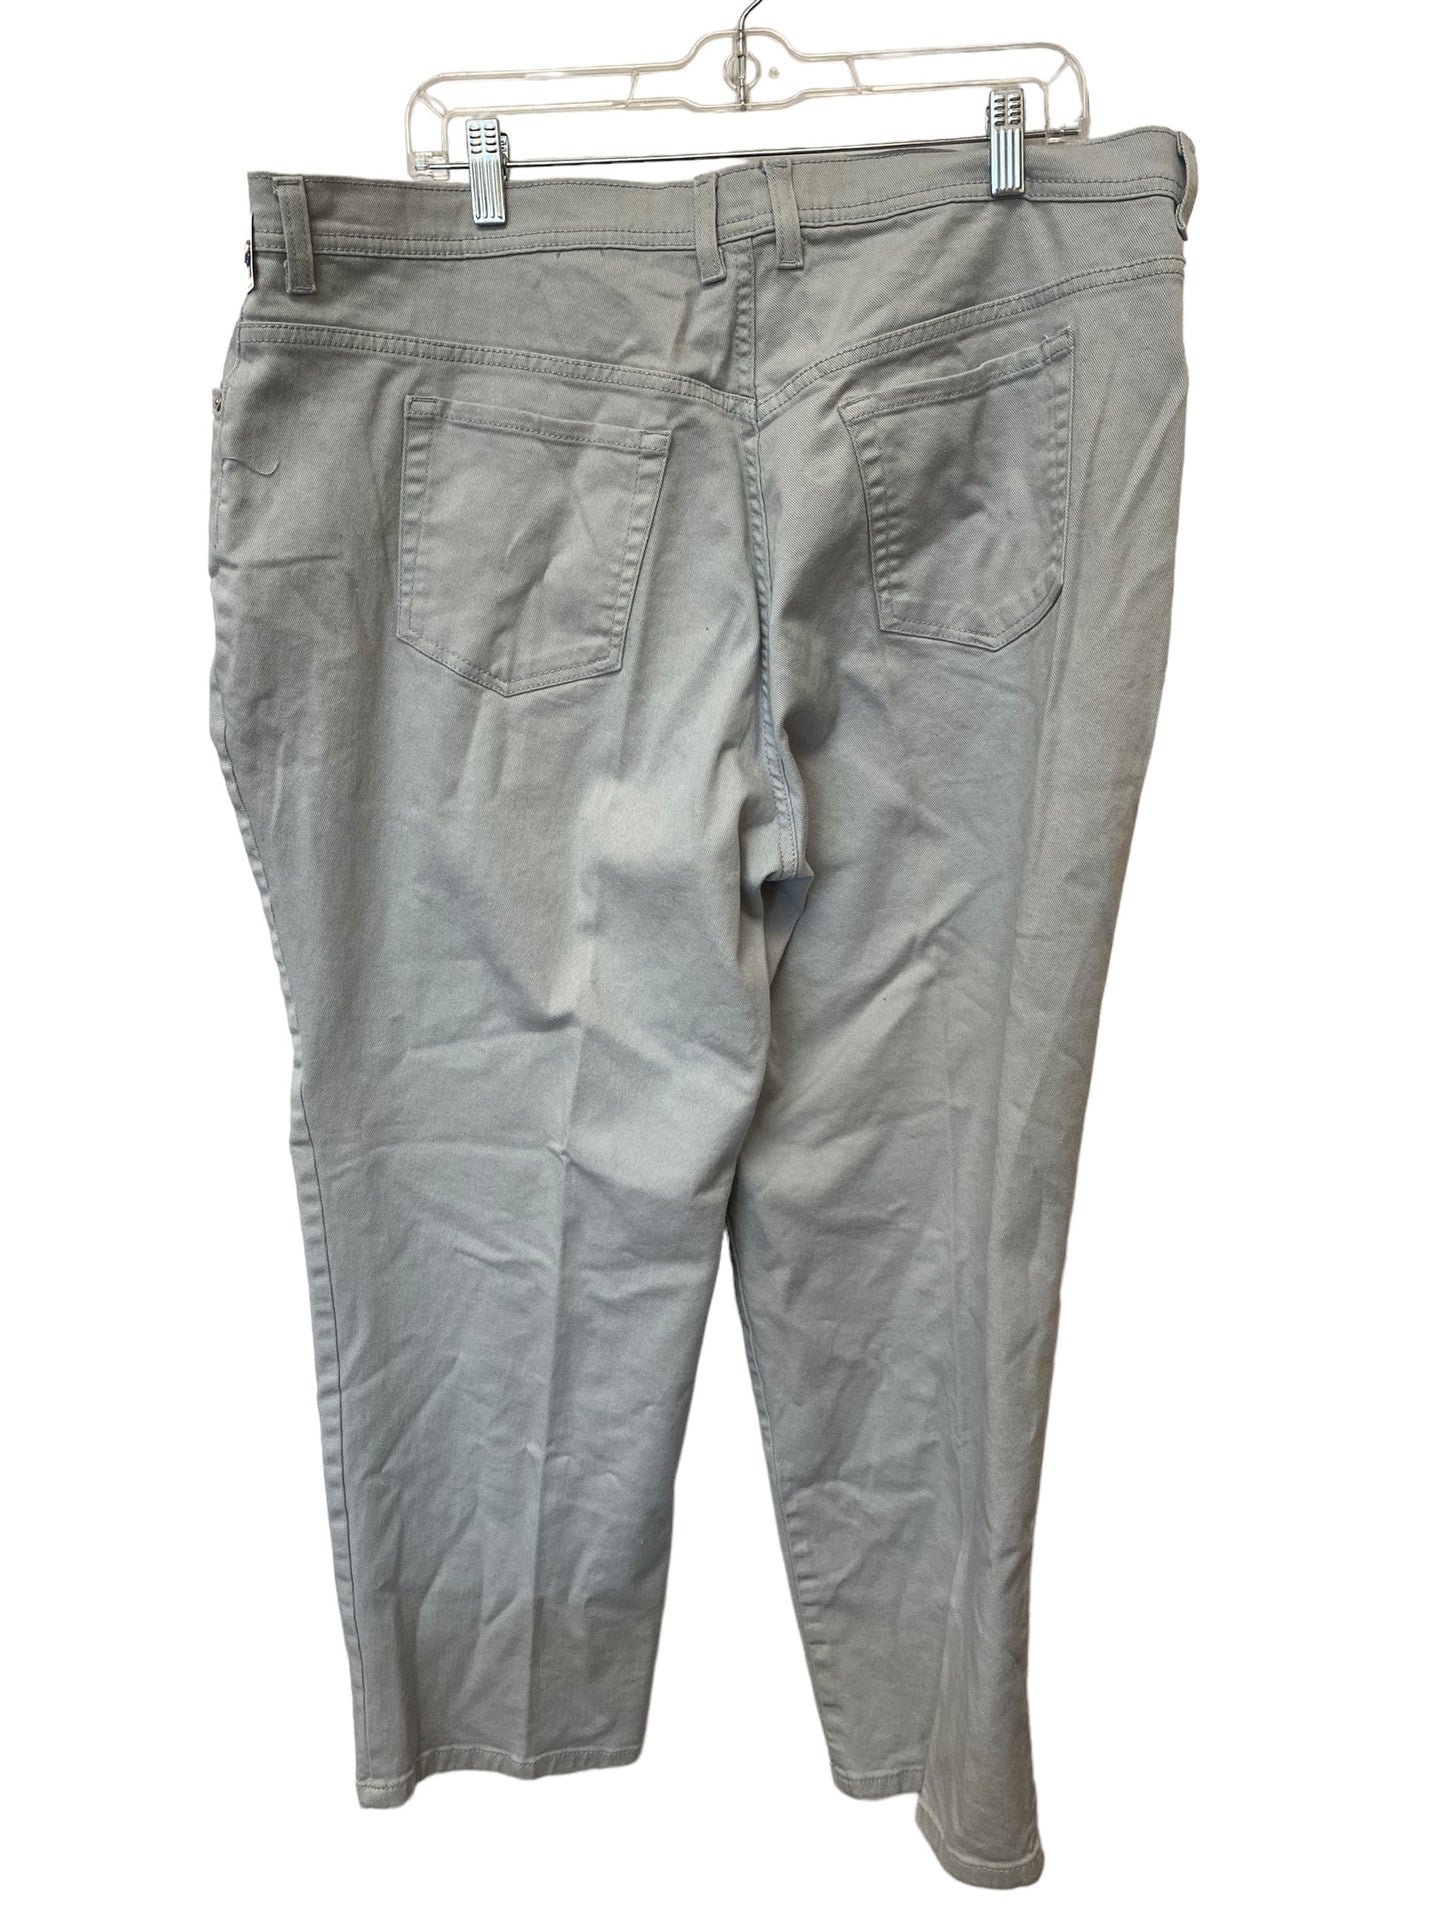 Pants Other By Gloria Vanderbilt  Size: 20